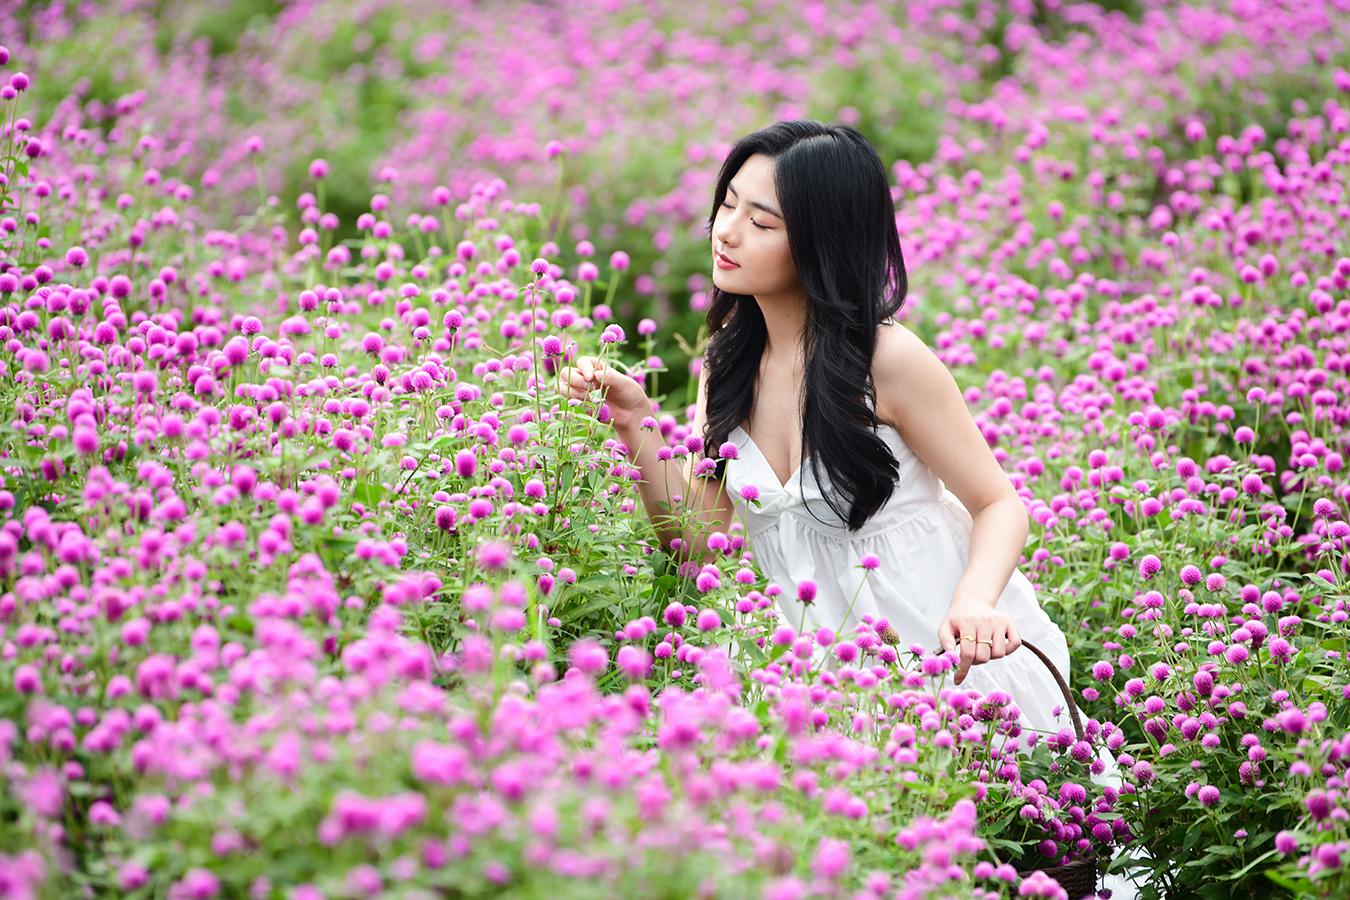 Cánh đồng hoa màu tím là một trong những địa điểm tham quan không thể bỏ qua cho những người yêu thiên nhiên và hoa. Hãy thực hiện chuyến đi và cùng bình chọn cho cánh đồng hoa màu tím là một trong những điểm đến đẹp nhất Việt Nam.